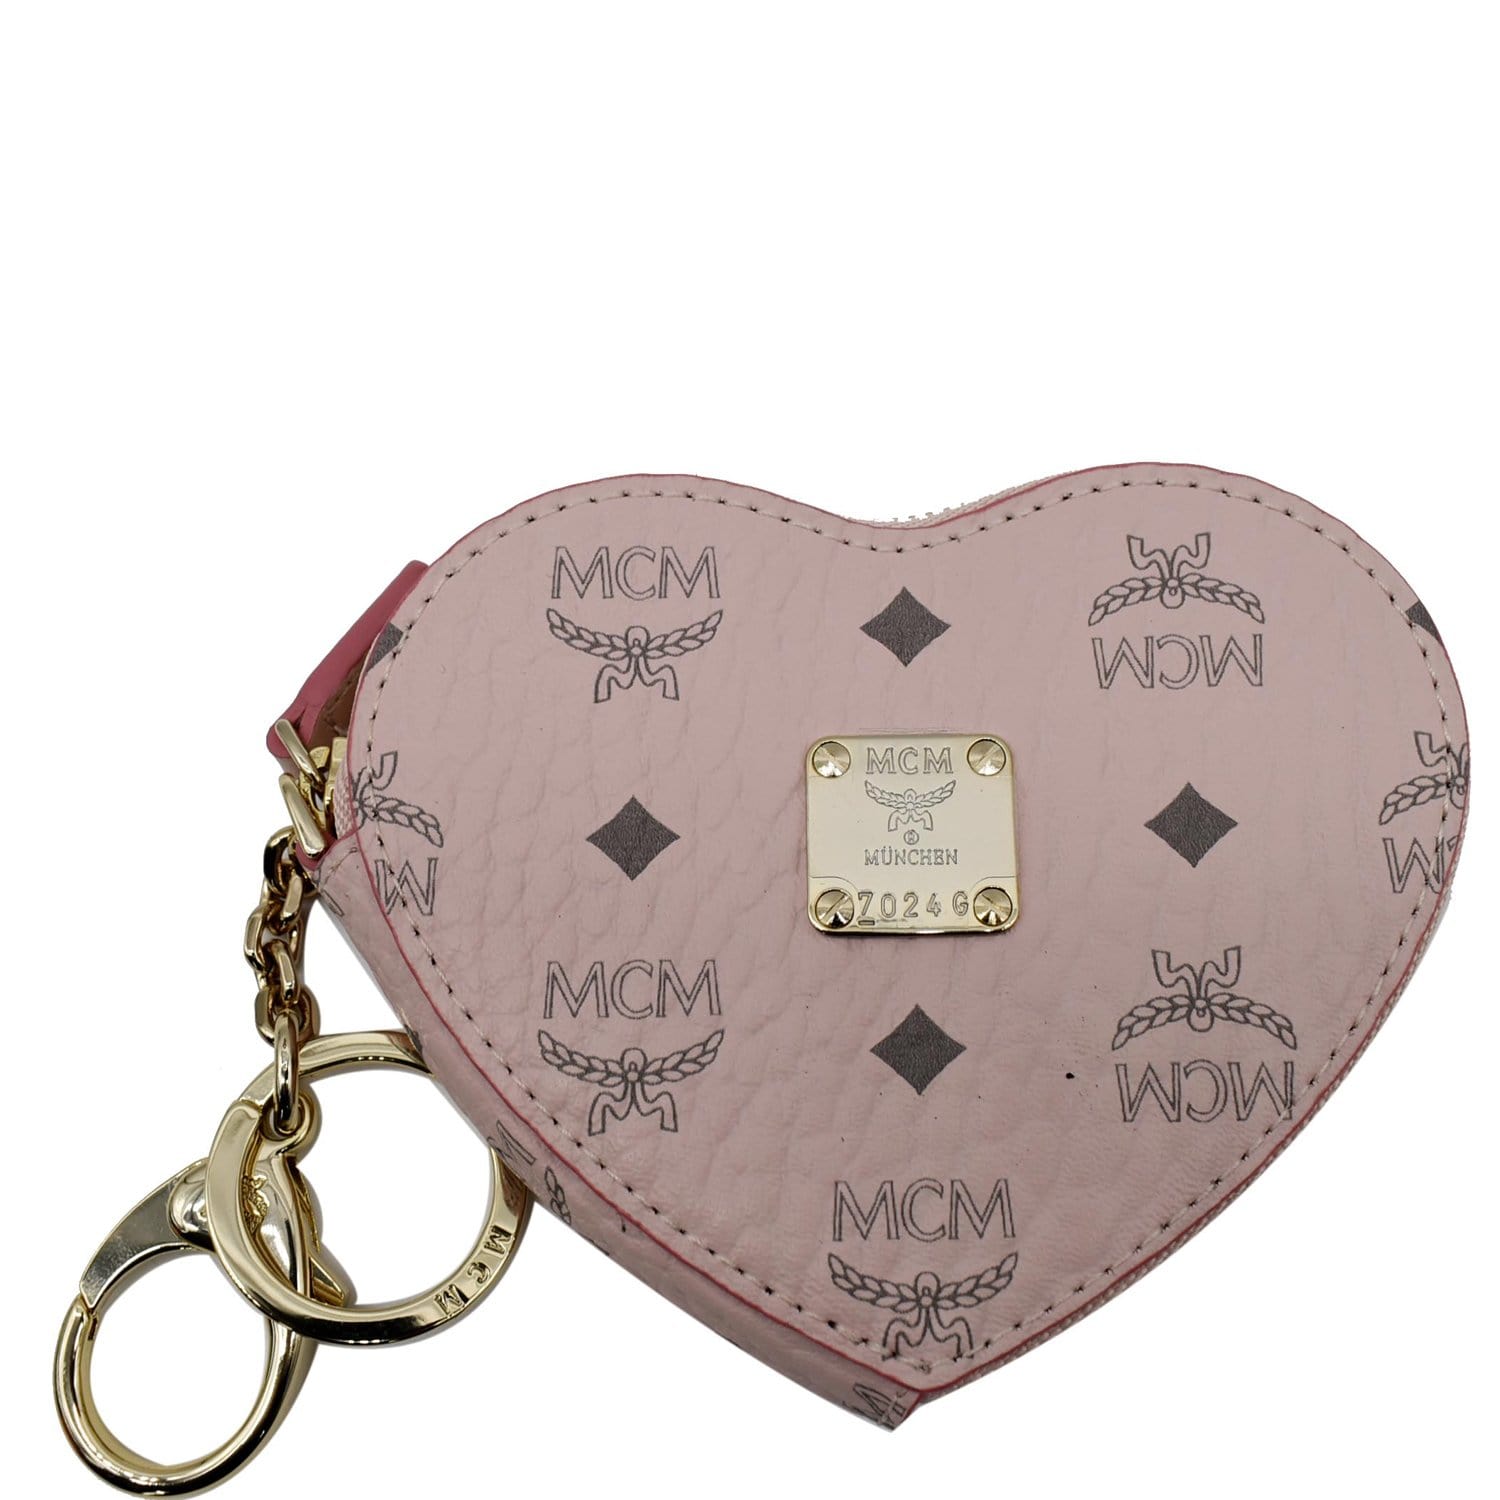 How to Wear the LOUIS VUITTON Heart Coin Purse, Bag Charm